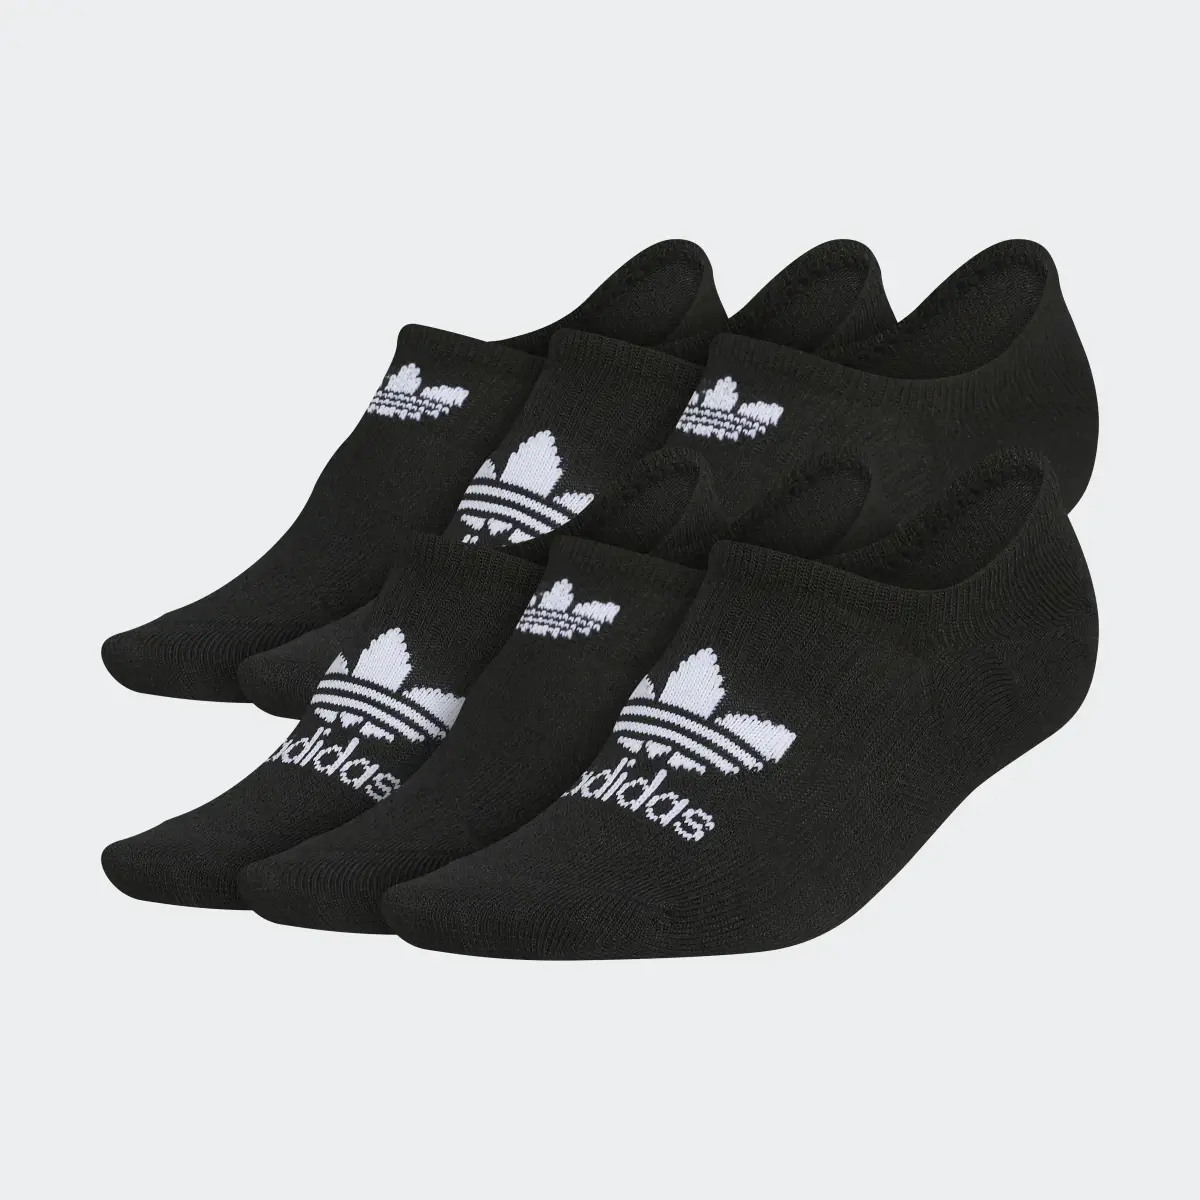 Adidas Classic Superlite Super-No-Show Socks 6 Pairs. 2